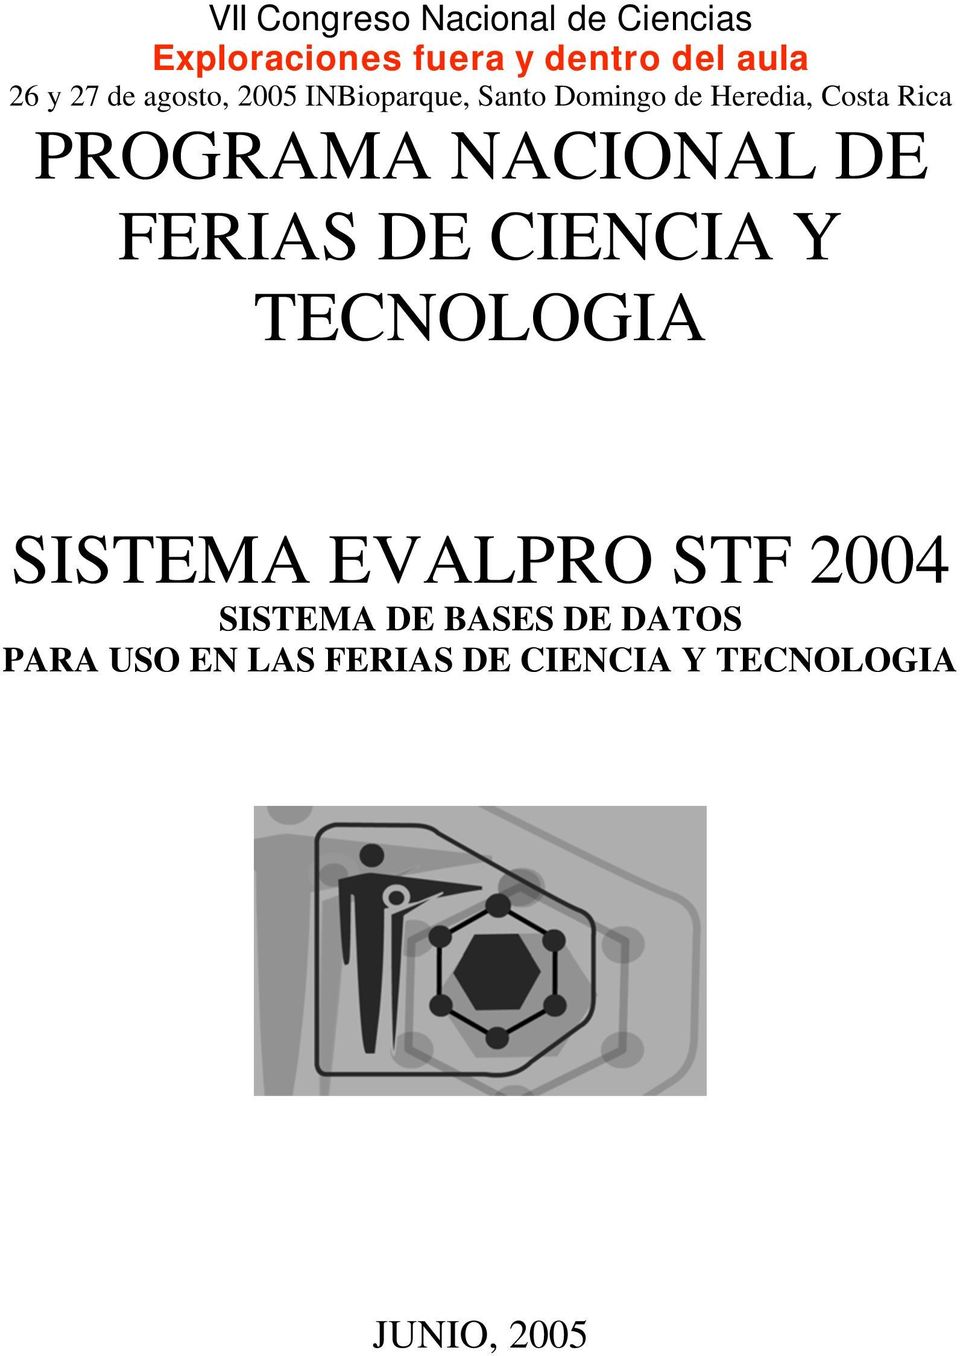 NACIONAL DE FERIAS DE CIENCIA Y TECNOLOGIA SISTEMA EVALPRO STF 2004